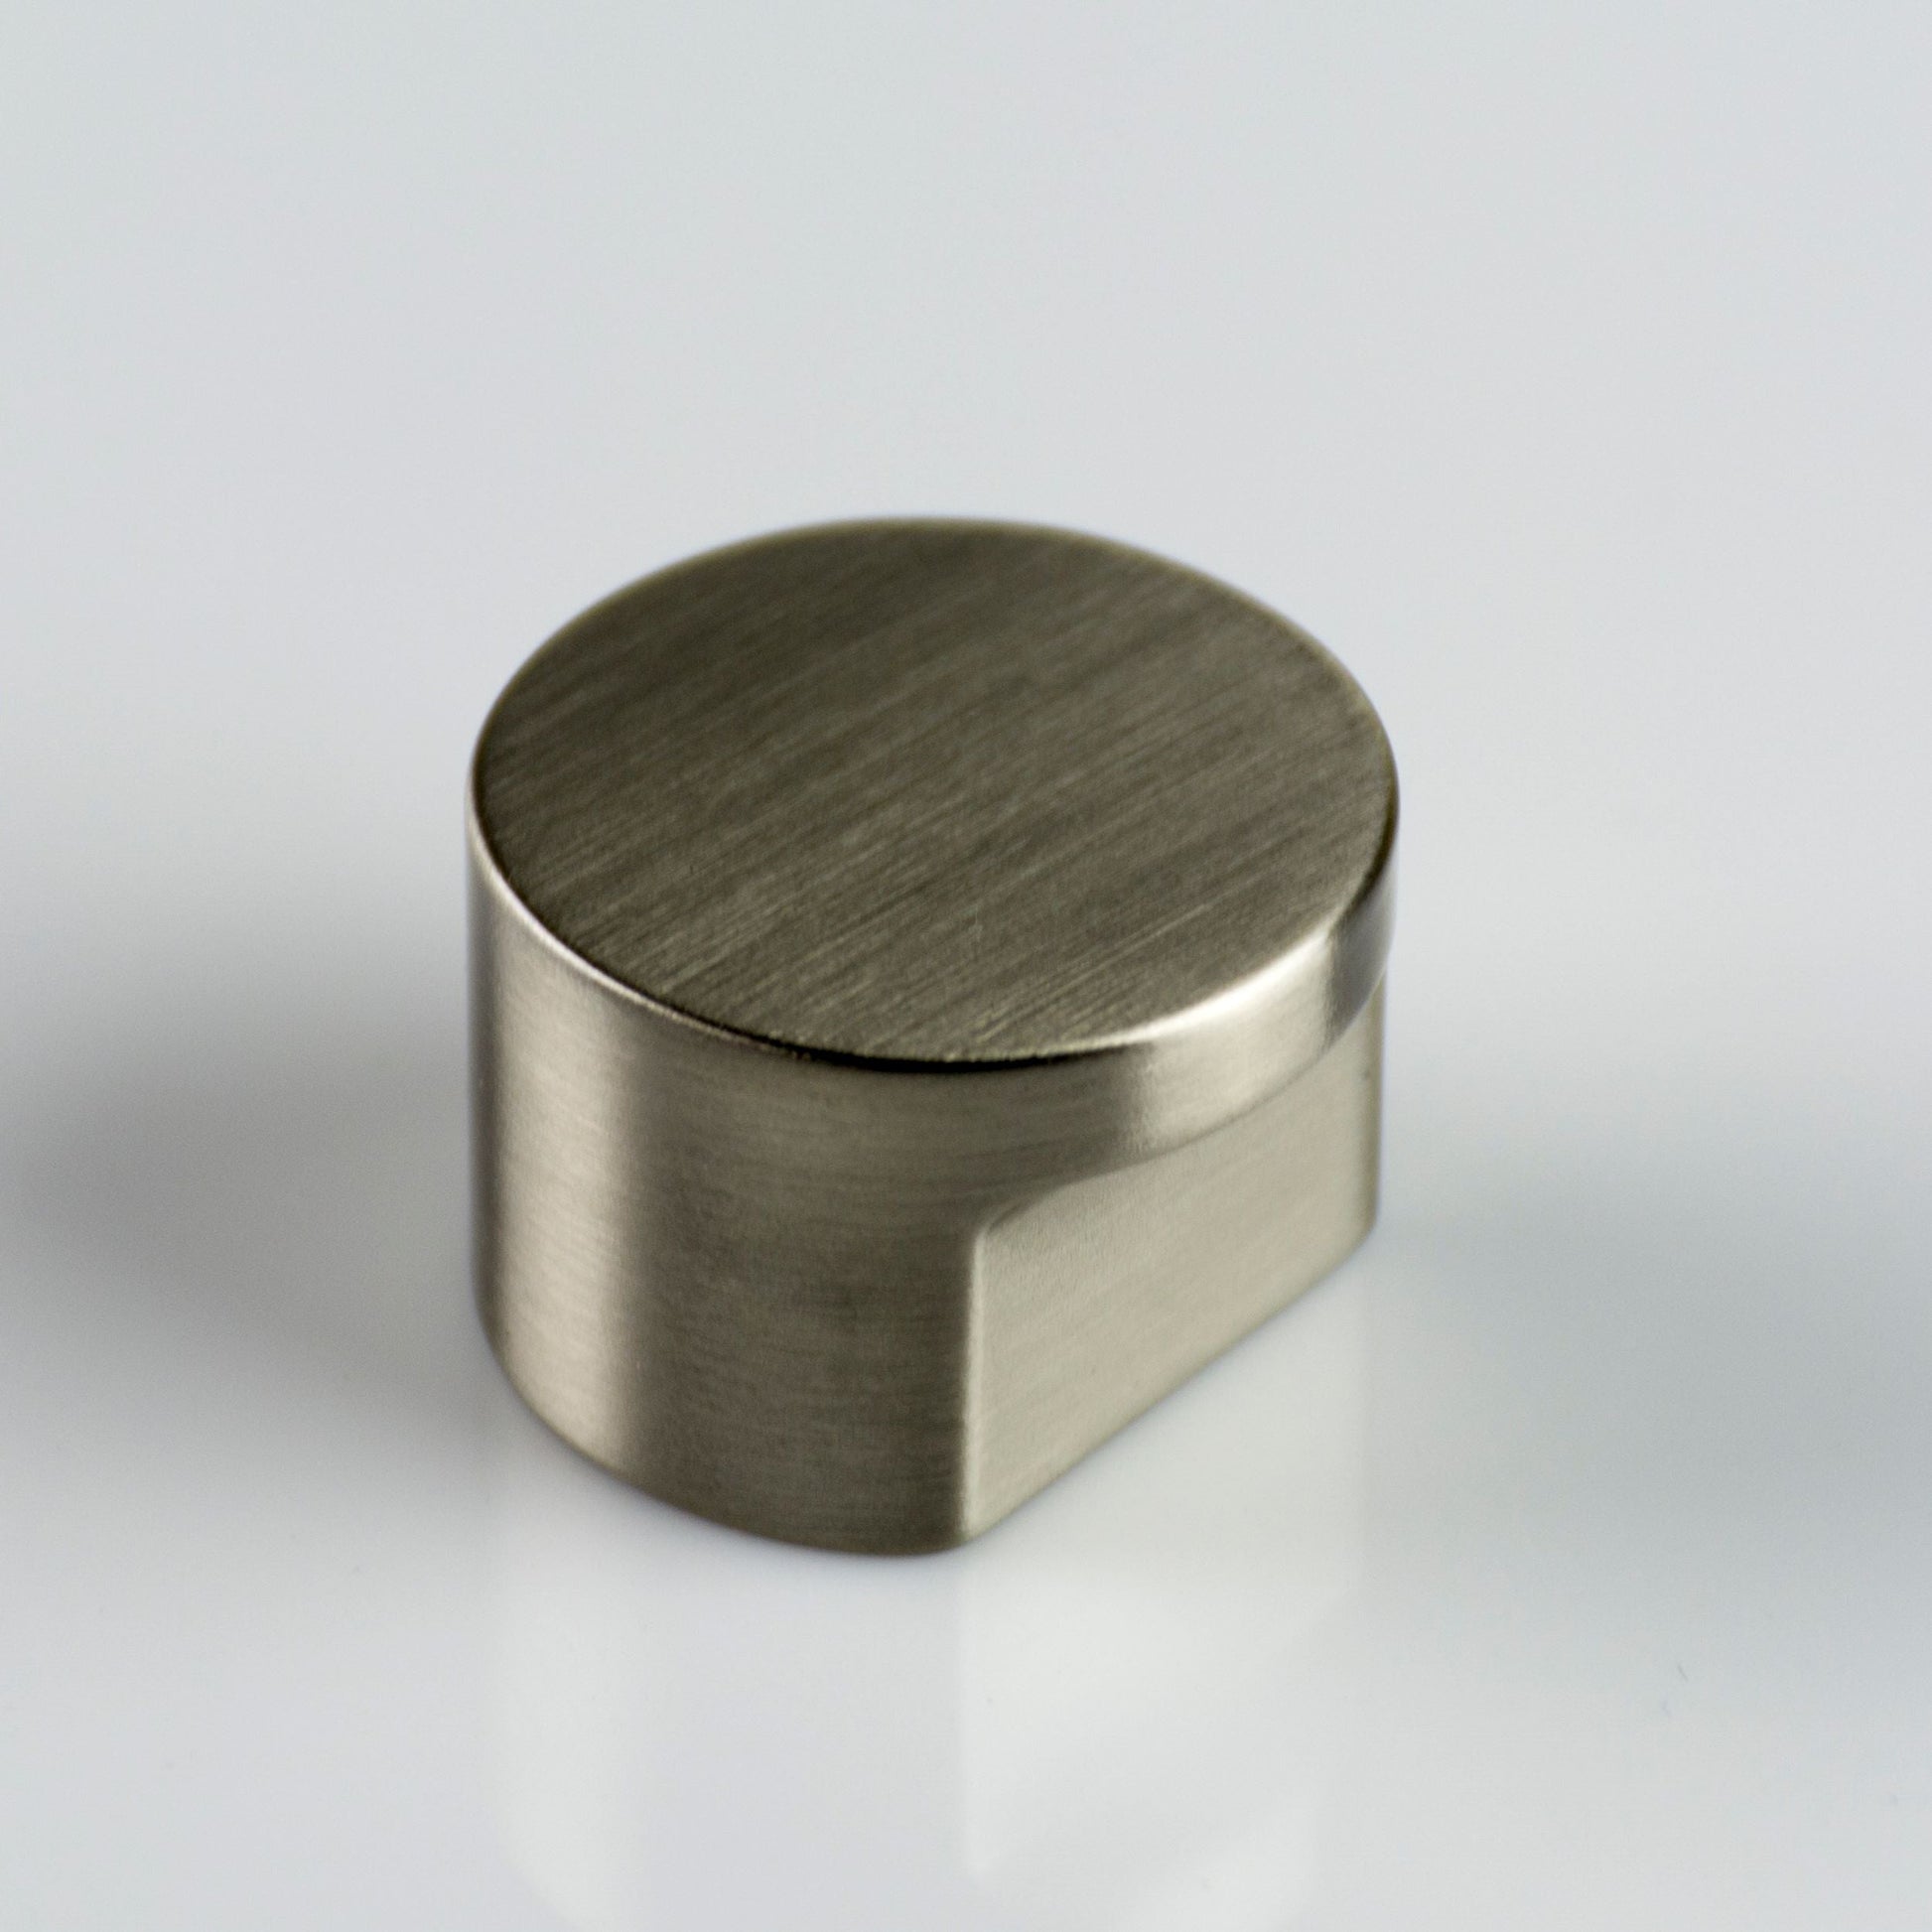 ZEN Design Radio 1" Diameter Brushed Nickel Cabinet Knob